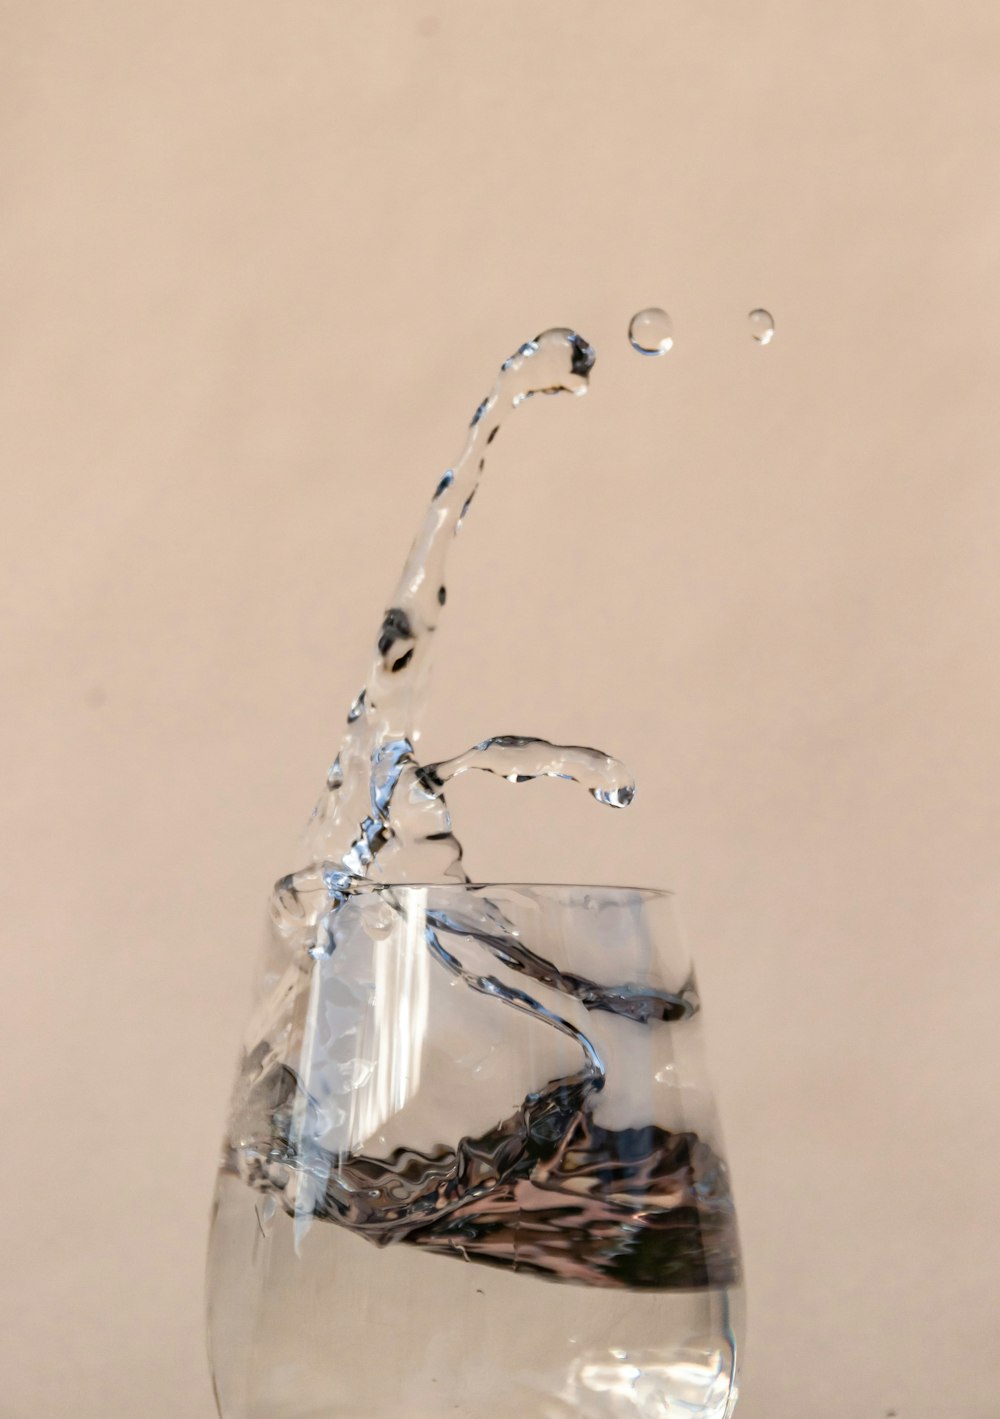 투명한 음료수 유리에 쏟아지는 물